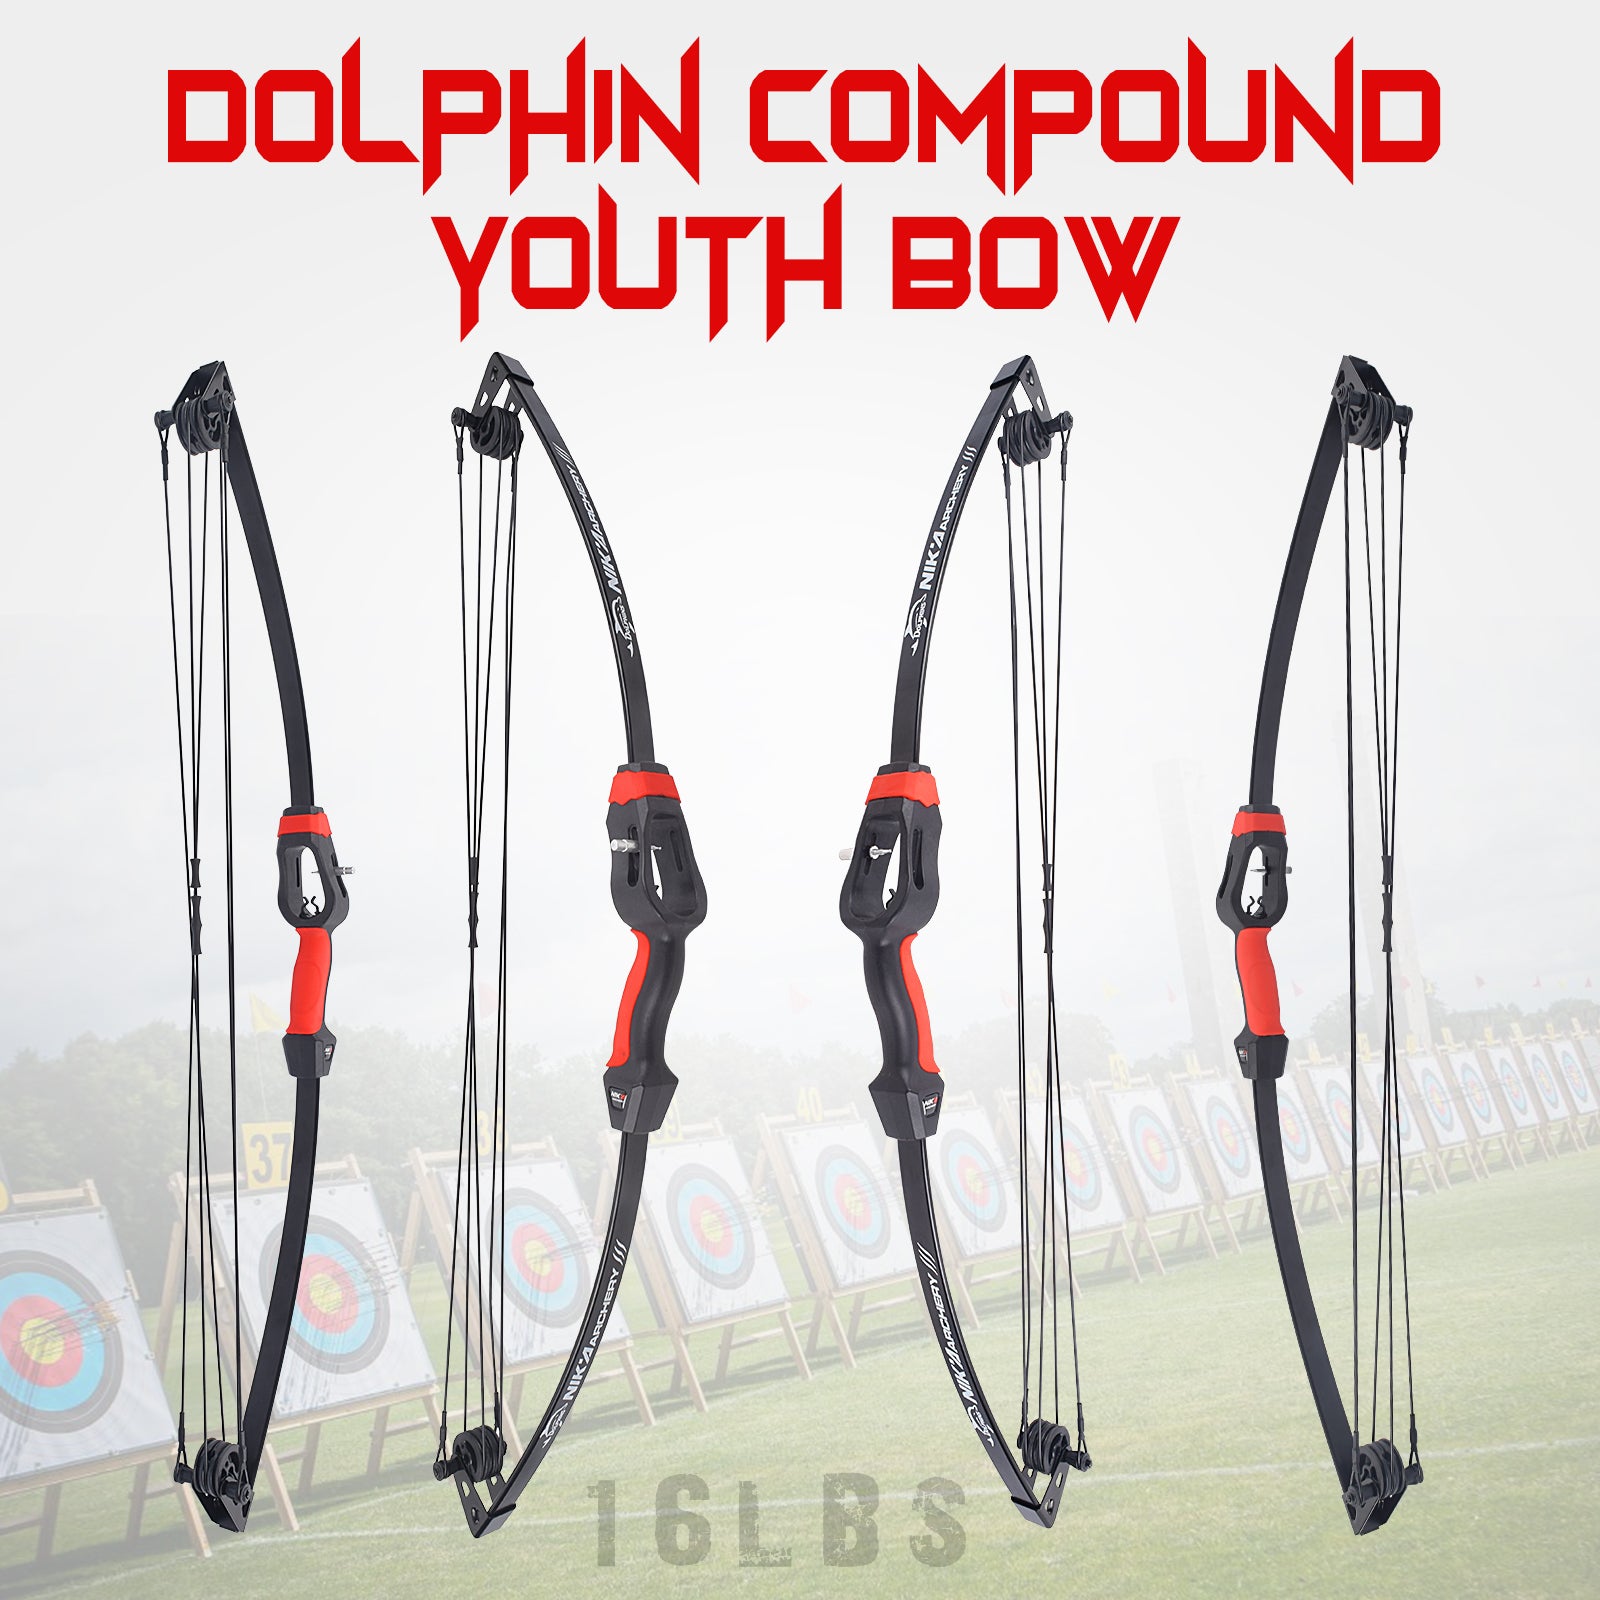 Juego de arco y flecha compuesto de 16 libras al aire libre para niños jóvenes principiantes en tiro con arco